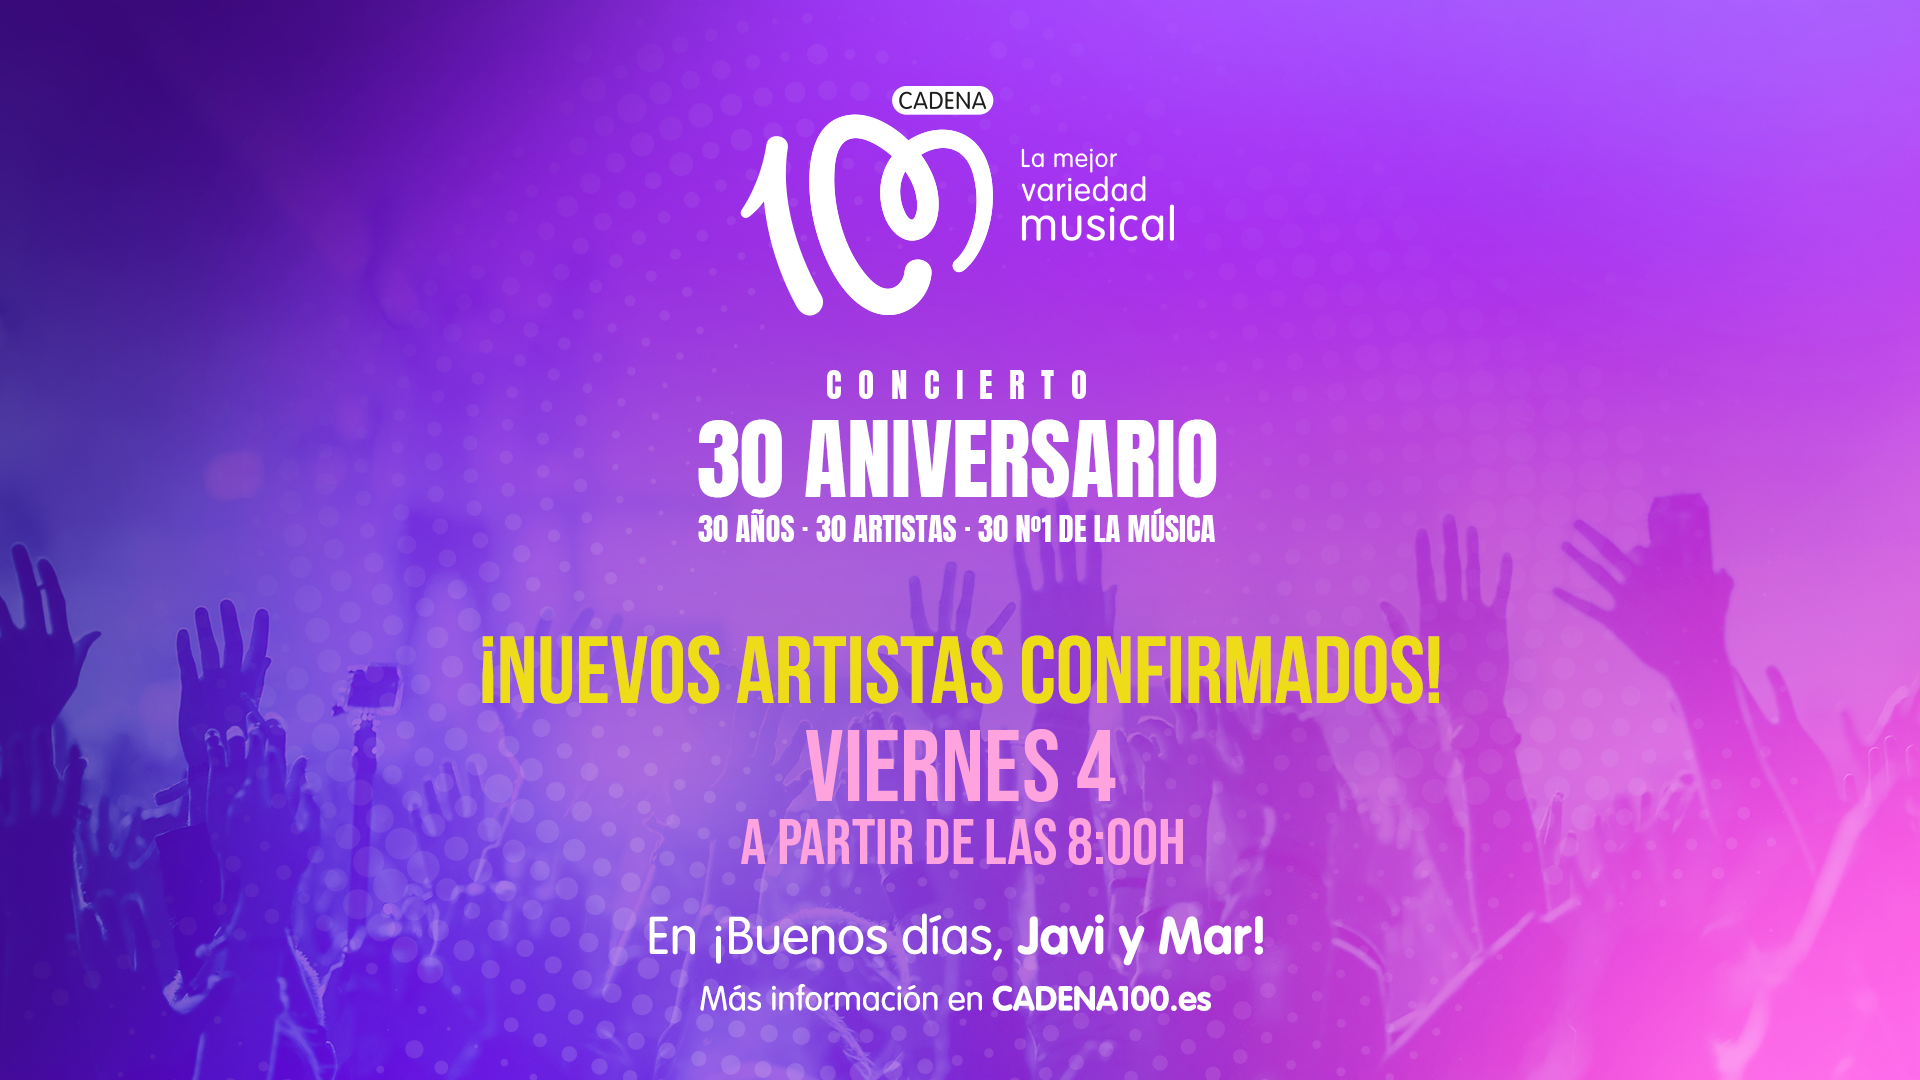 Este viernes, se incorporan nuevos artistas al cartel del CADENA 100 CONCIERTO 30 ANIVERSARIO - Concierto 30 aniversario de - CADENA 100